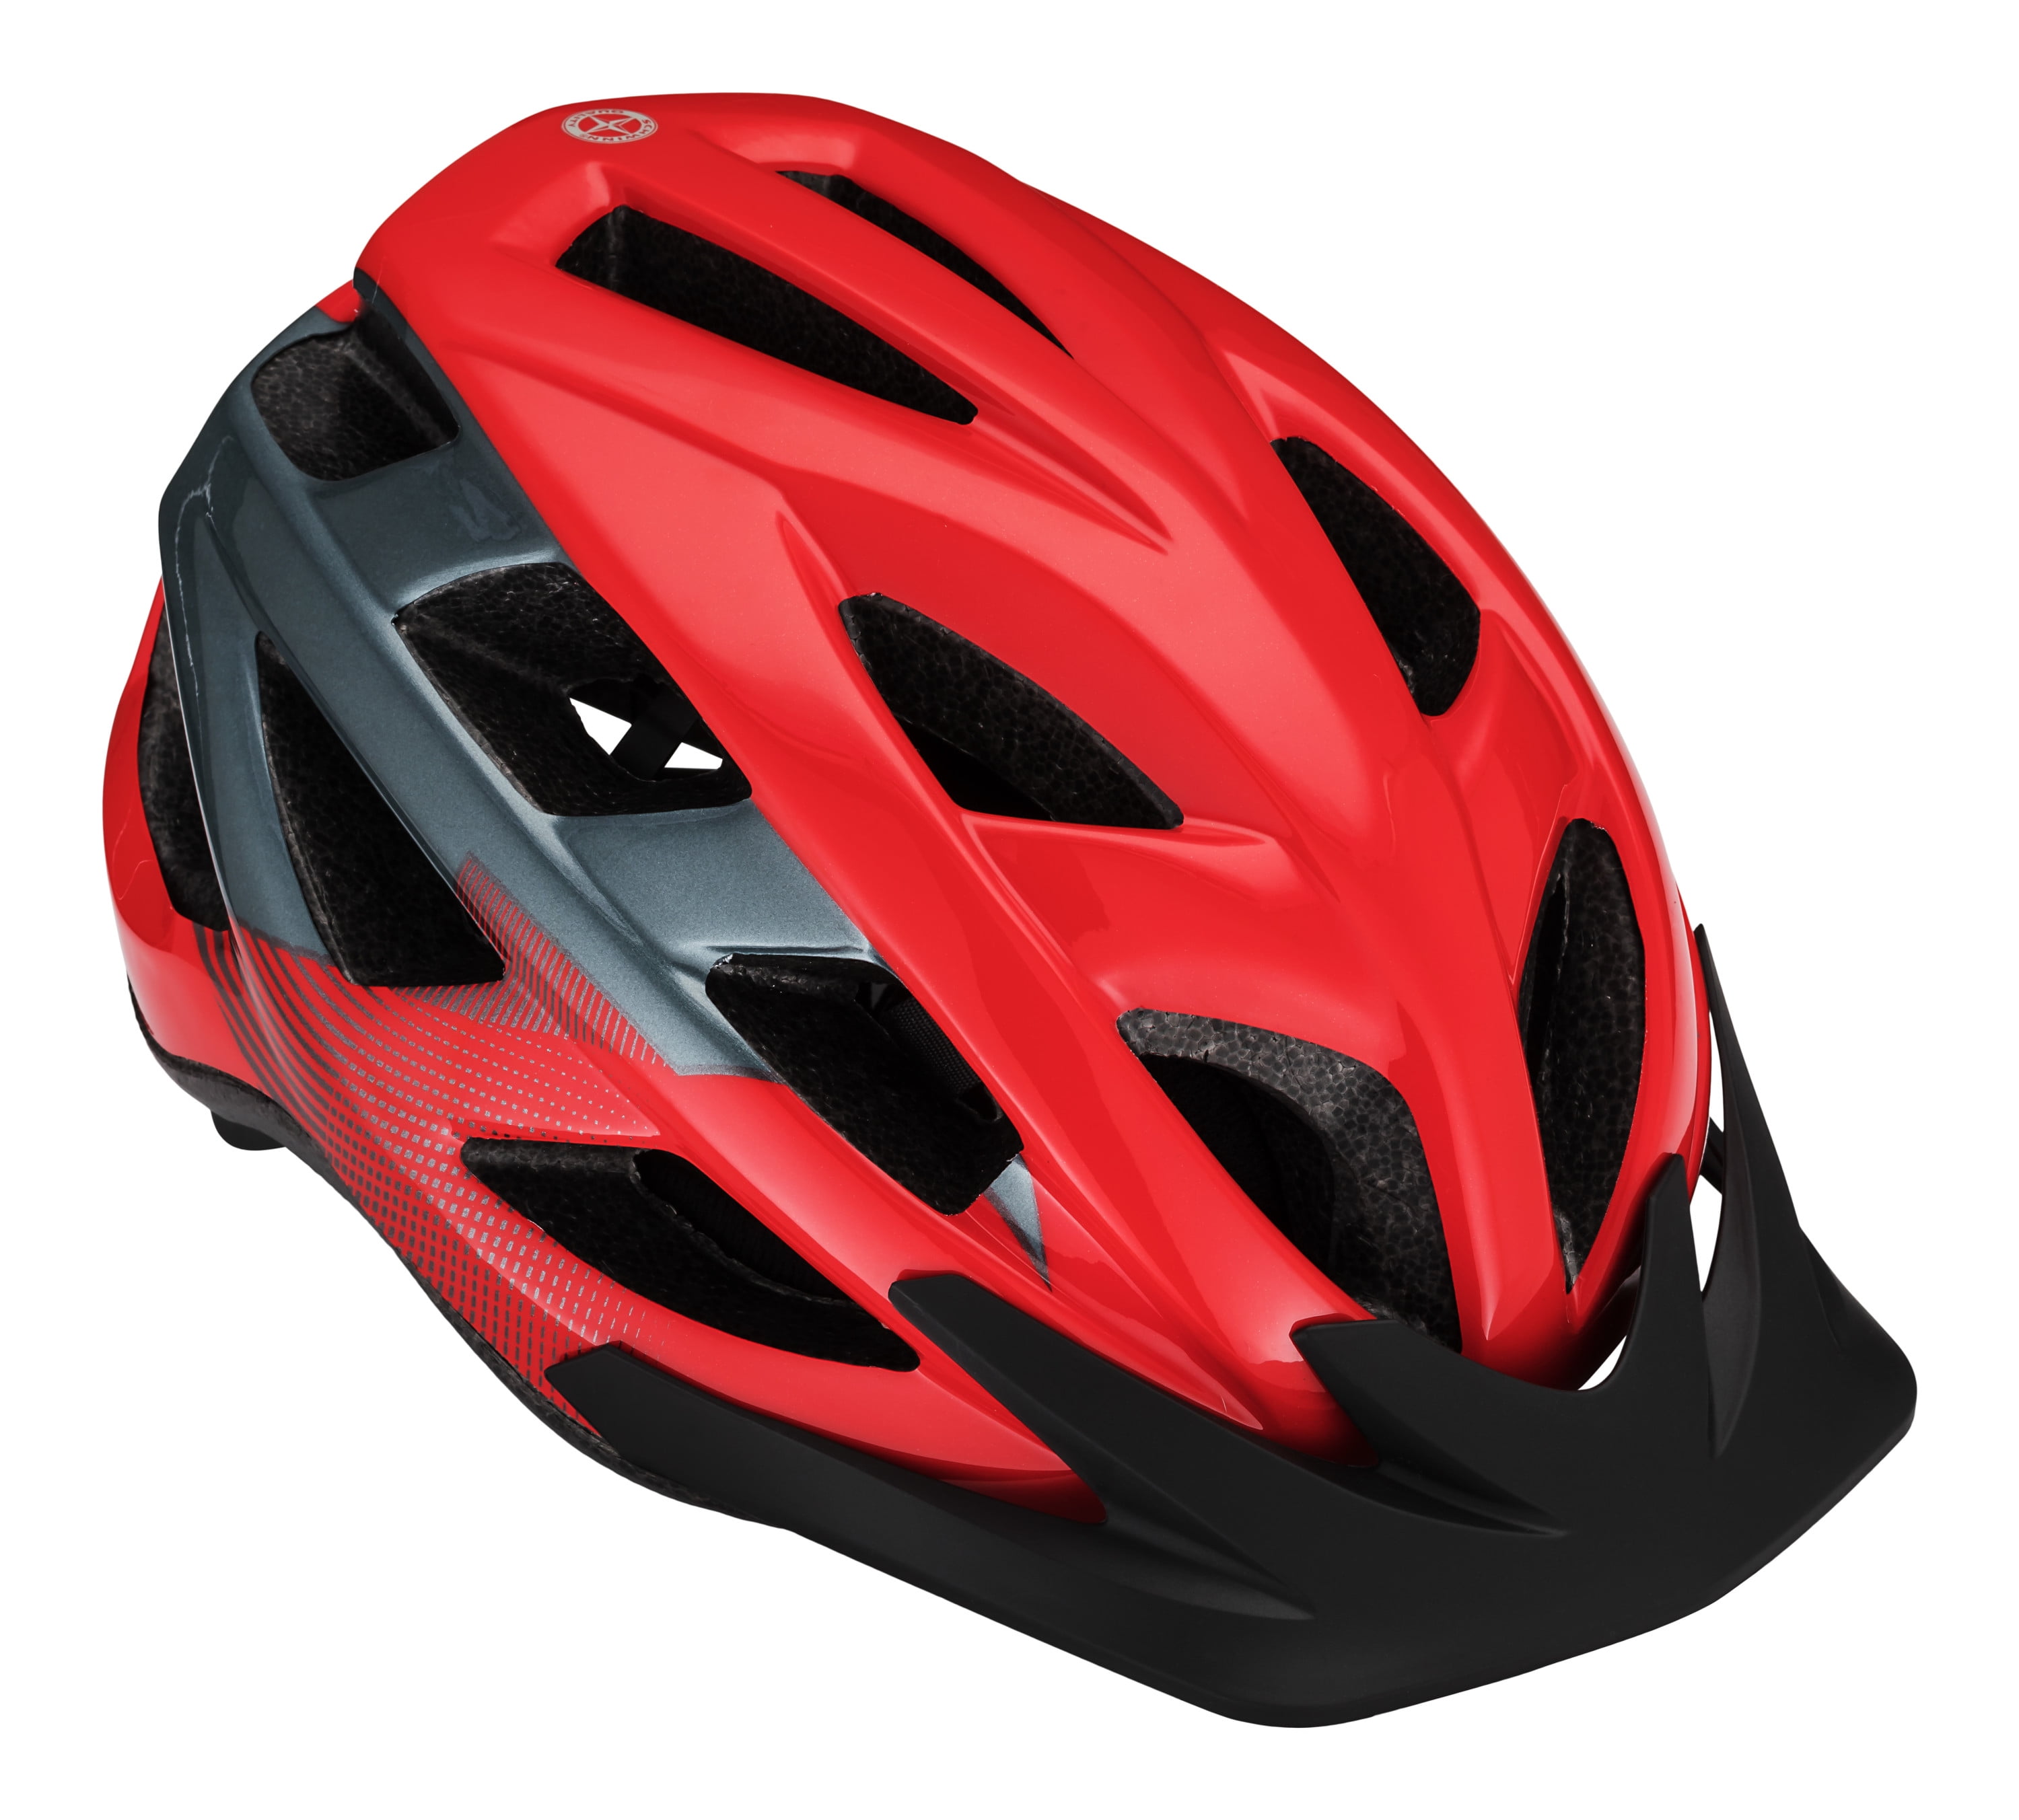 NWT SCHWINN Adult Bike Helmet 14 Yrs Bicycle Easy Fit Red Ranger Adjustable NEW 